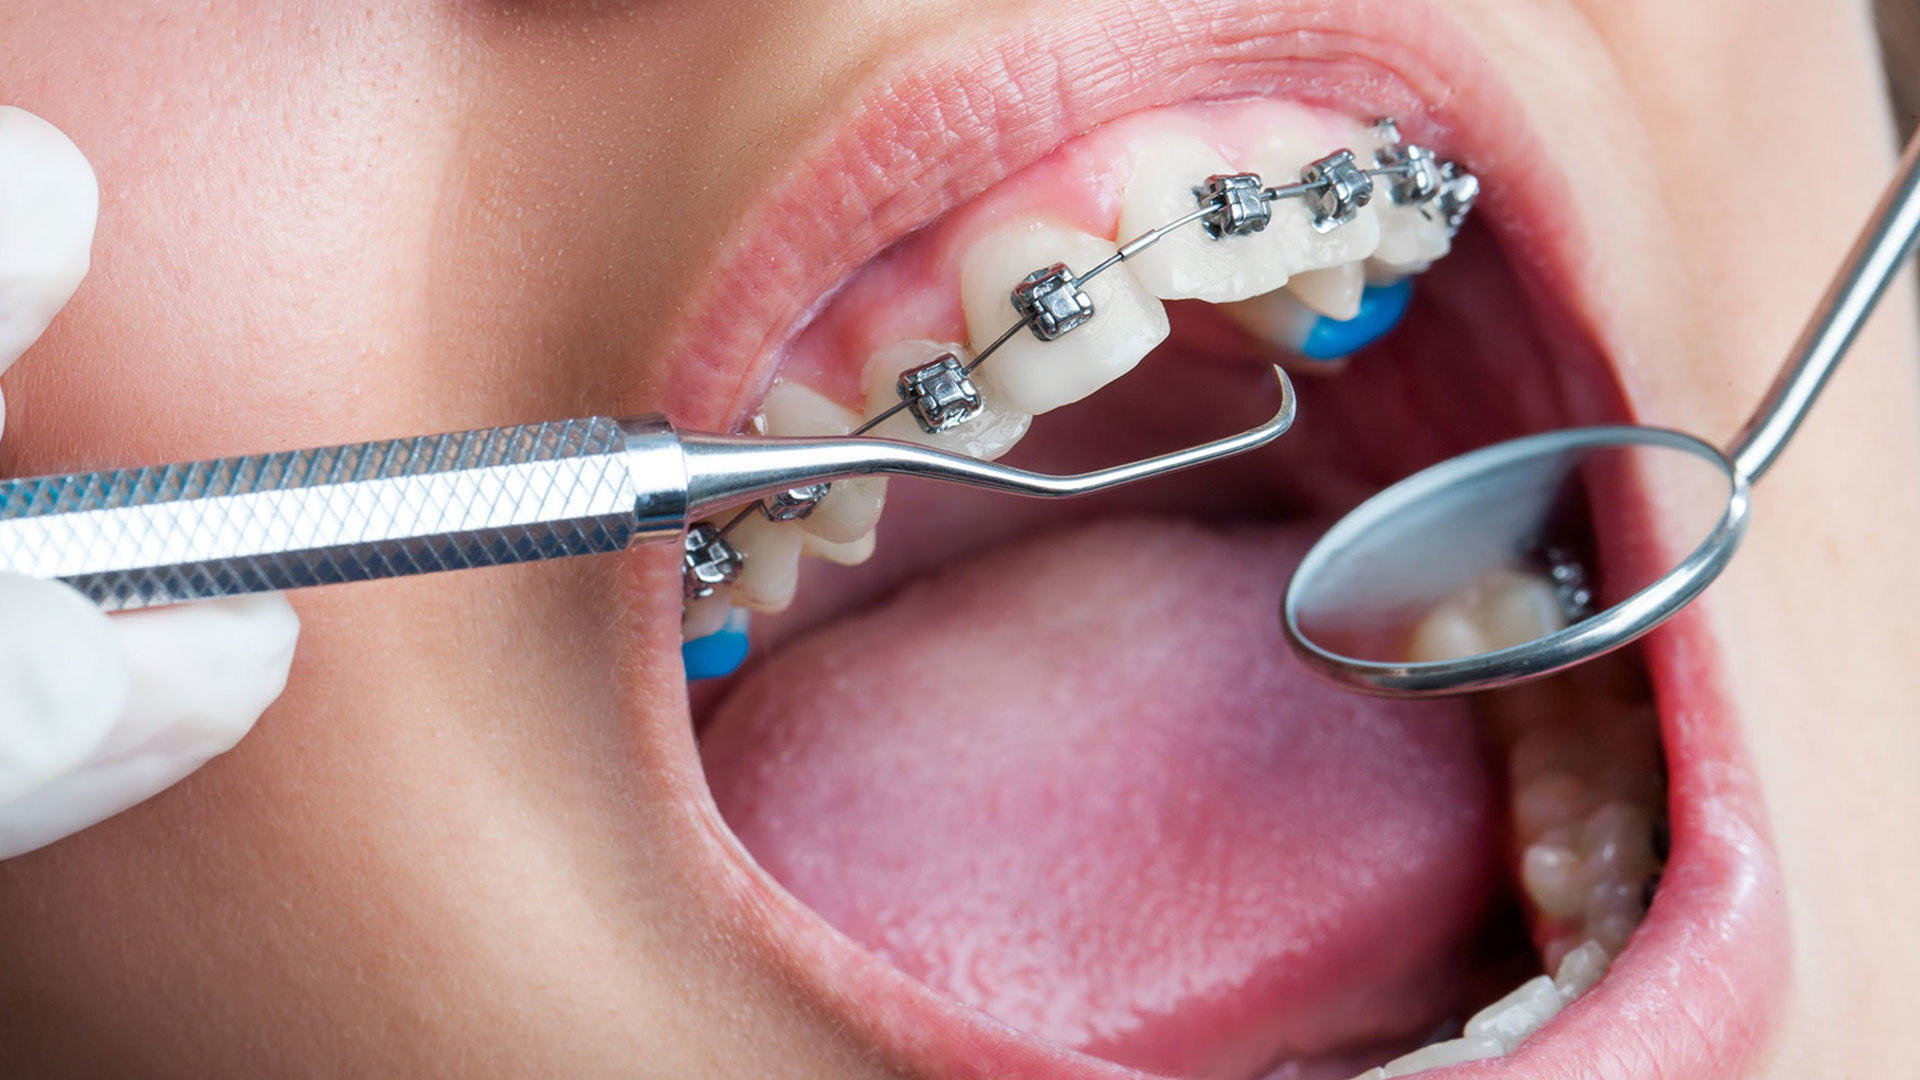 Điều trị chỉnh nha giúp ích gì cho tình trạng răng miệng?